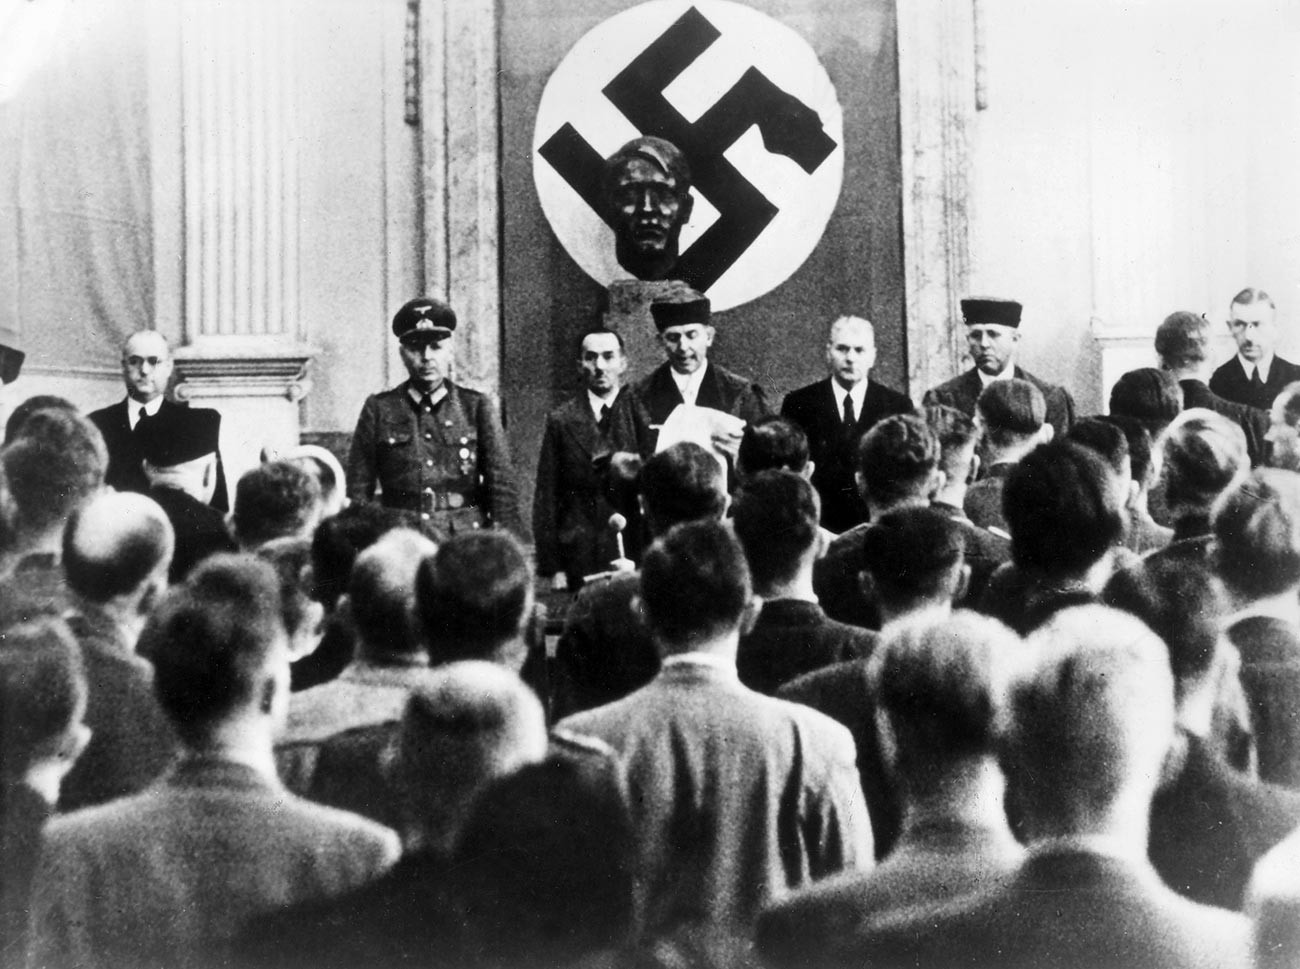 Изрекување казна во судницата на Врховниот суд во Берлин. Роланд Фрајслер (во средина), претседавач на народниот суд, чита пресуда. Од неговата лева страна е генерал Херман Рејнеке, шеф на Генералштабот.